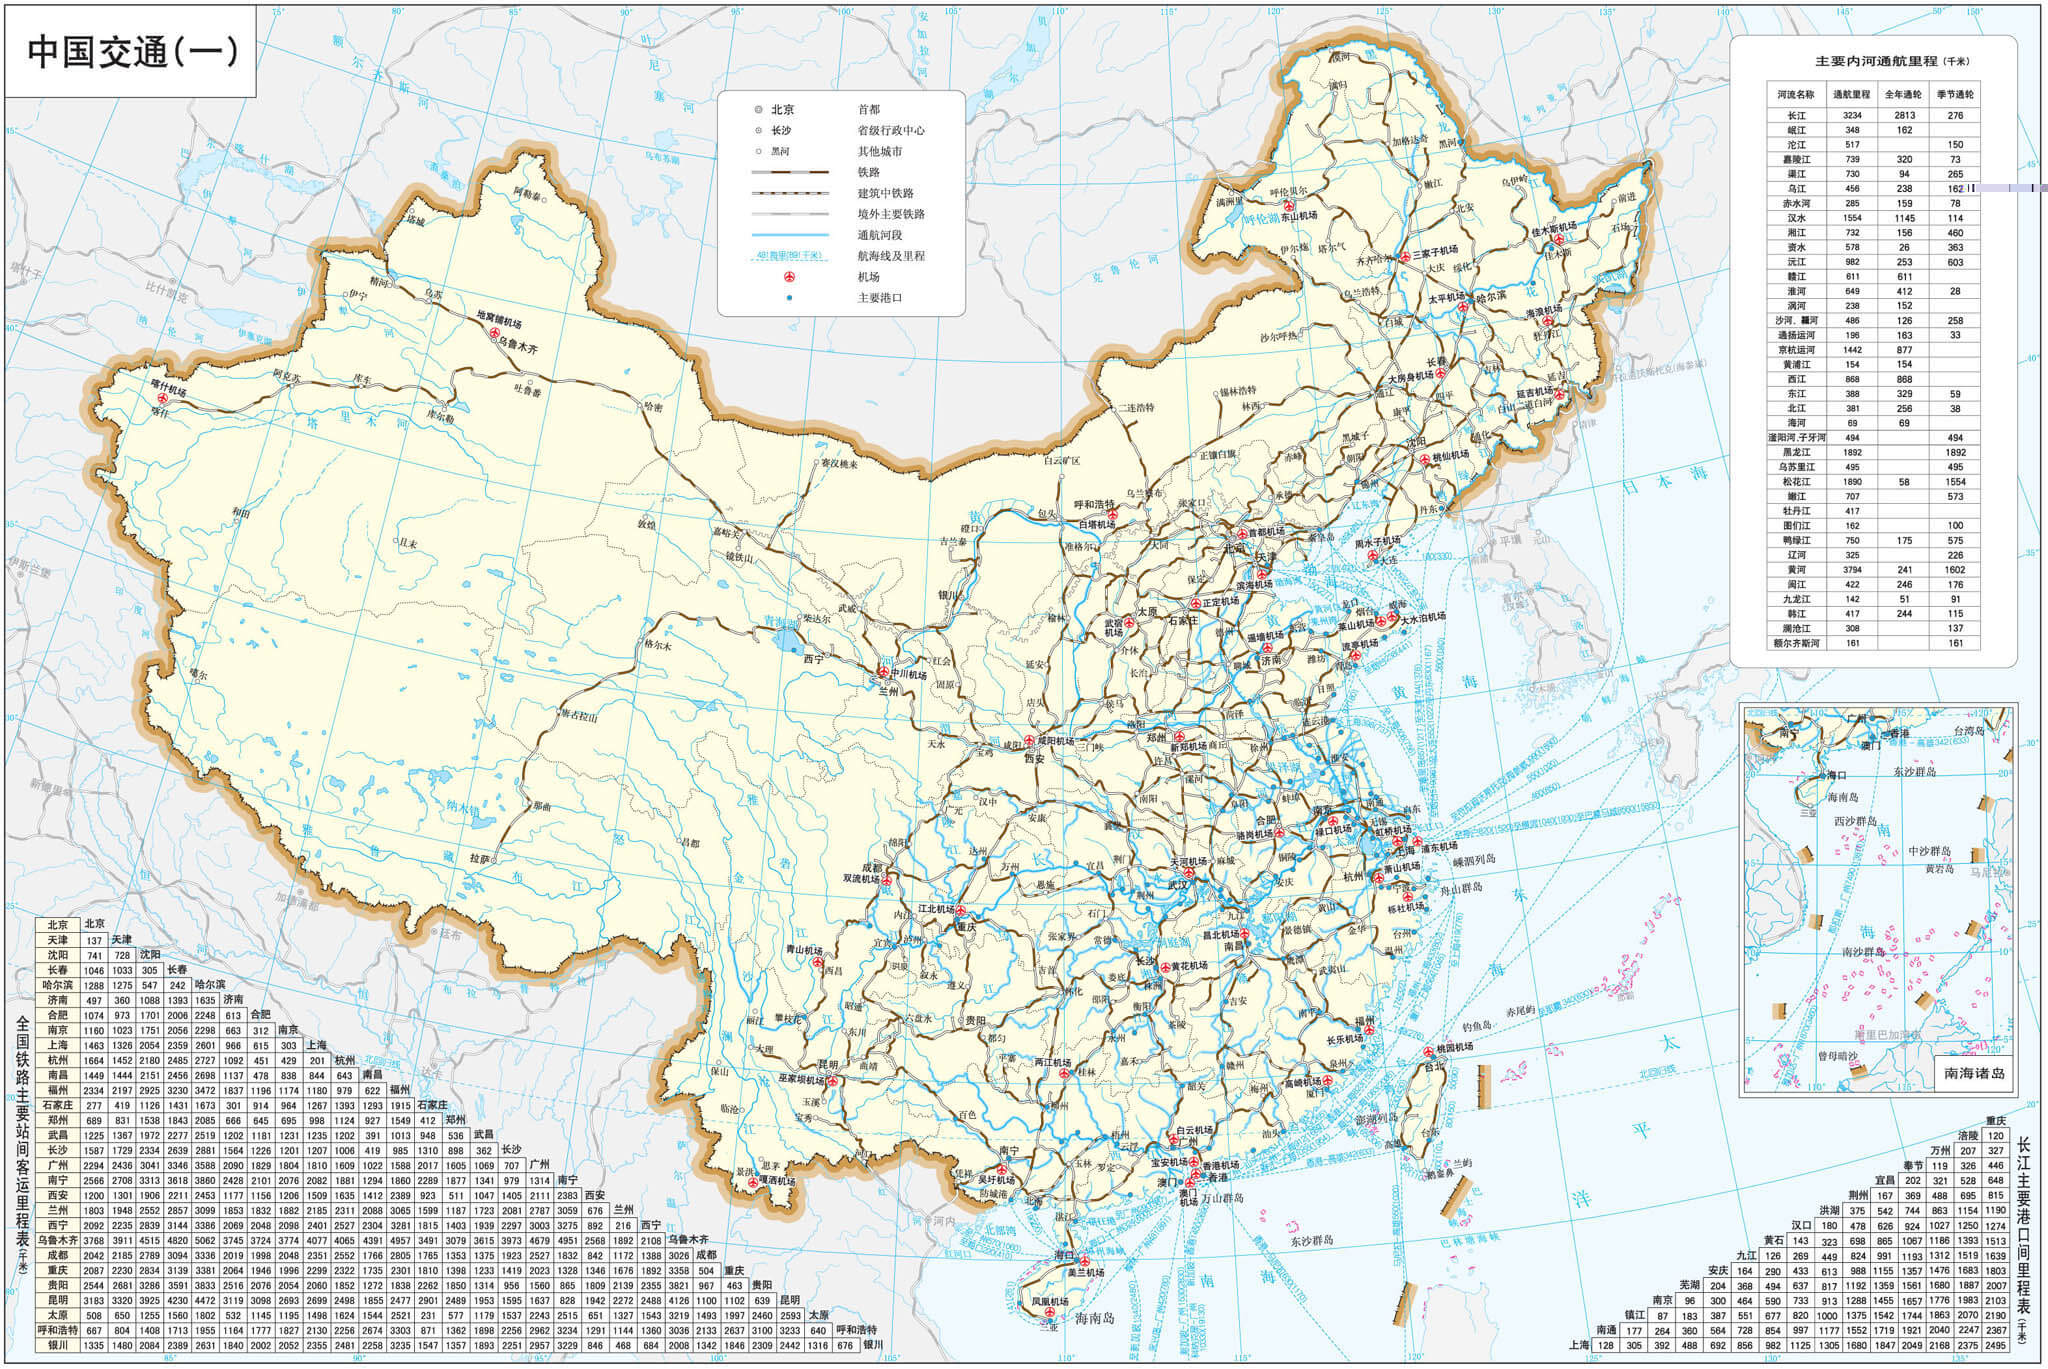 China Railway network Map